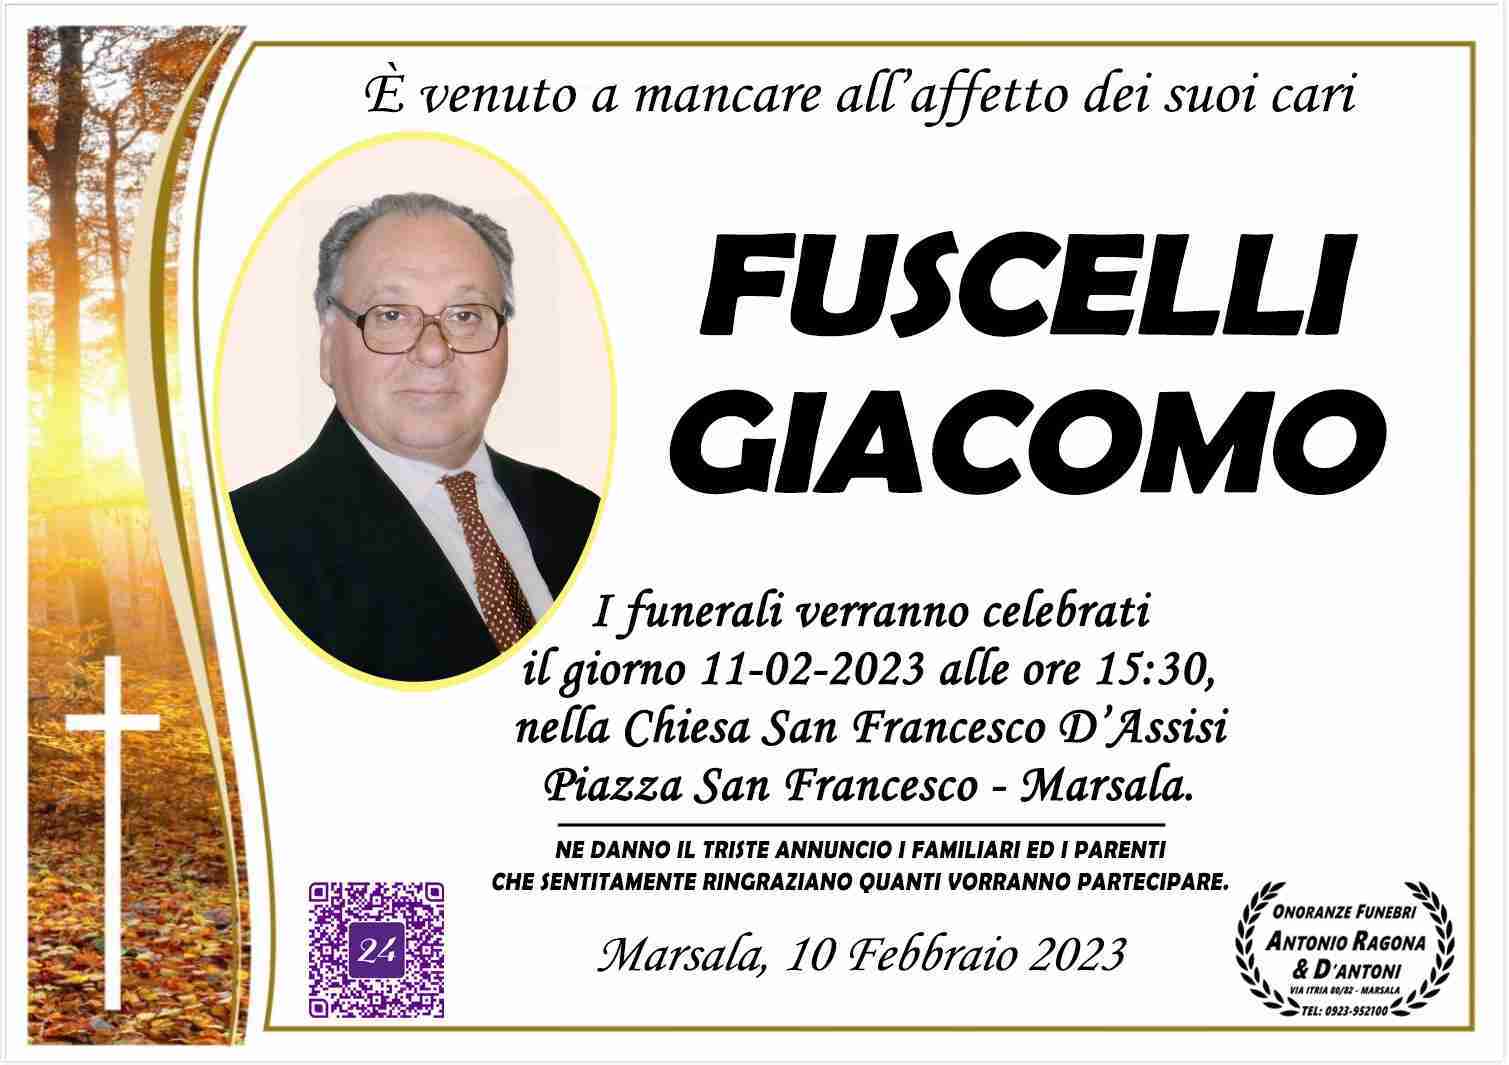 Giacomo Fuscelli